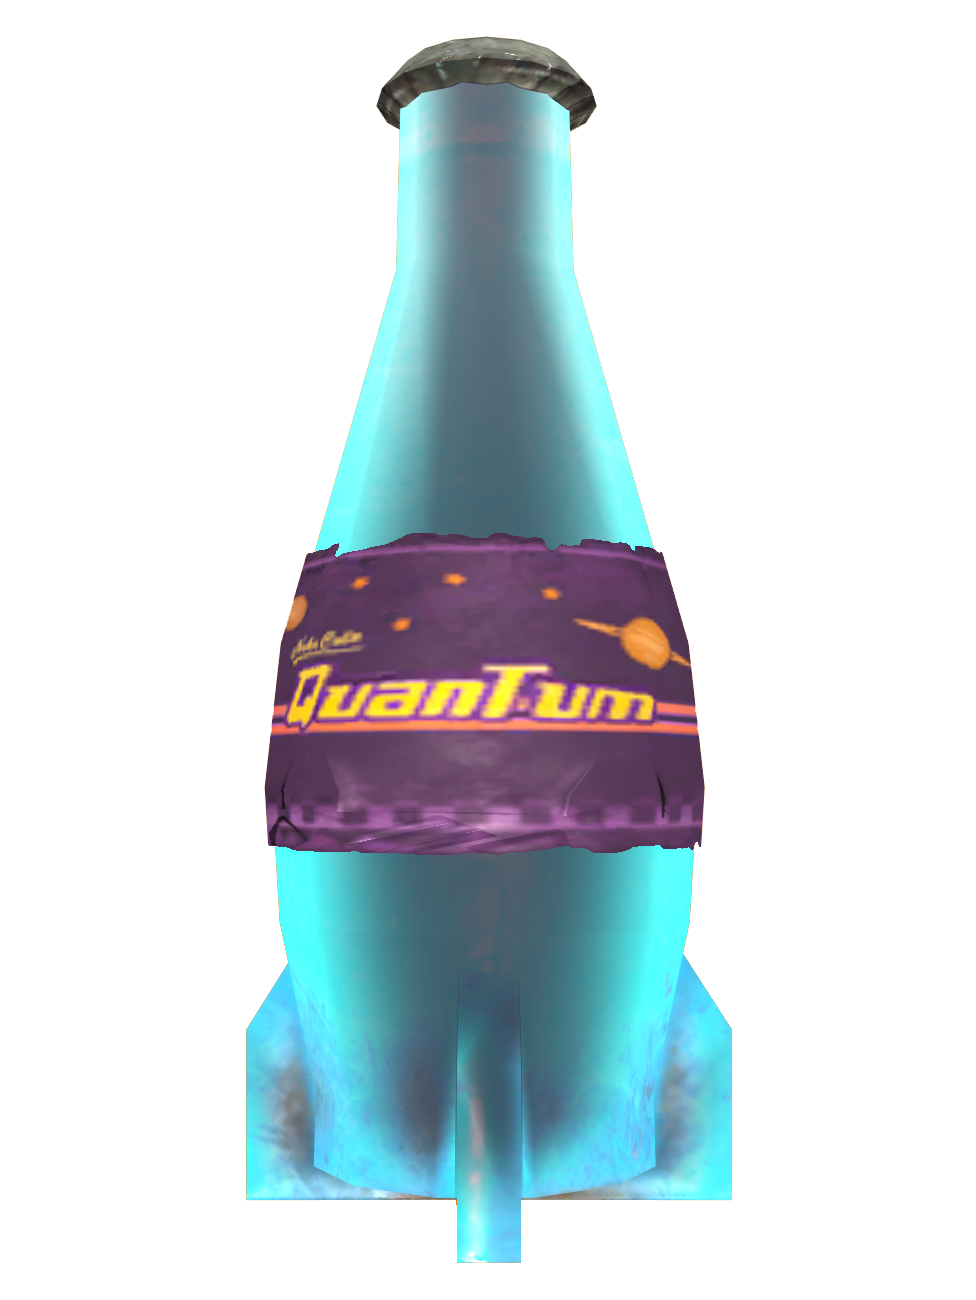 Ice cold Nuka-Cola Quantum, Fallout Wiki